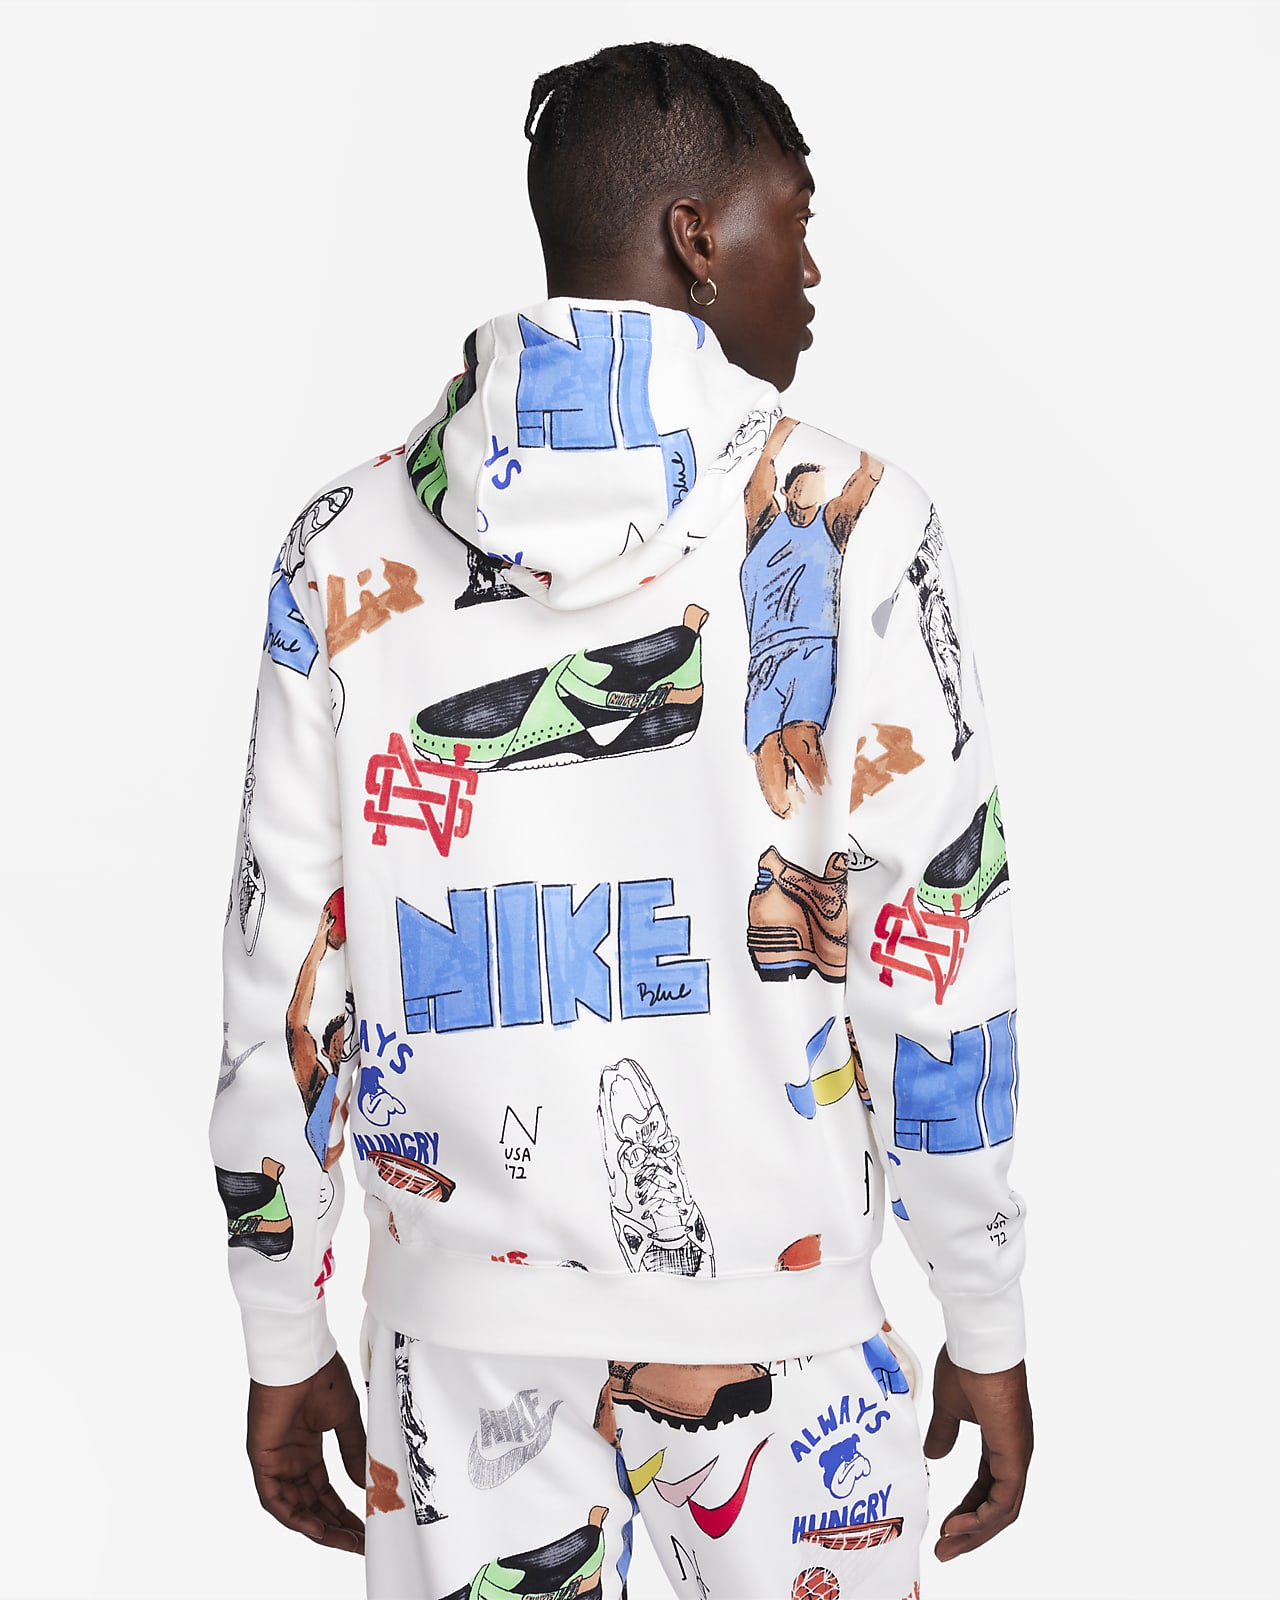 Nike Sportswear Club Fleece Men's Printed Pullover Hoodie. Nike.com